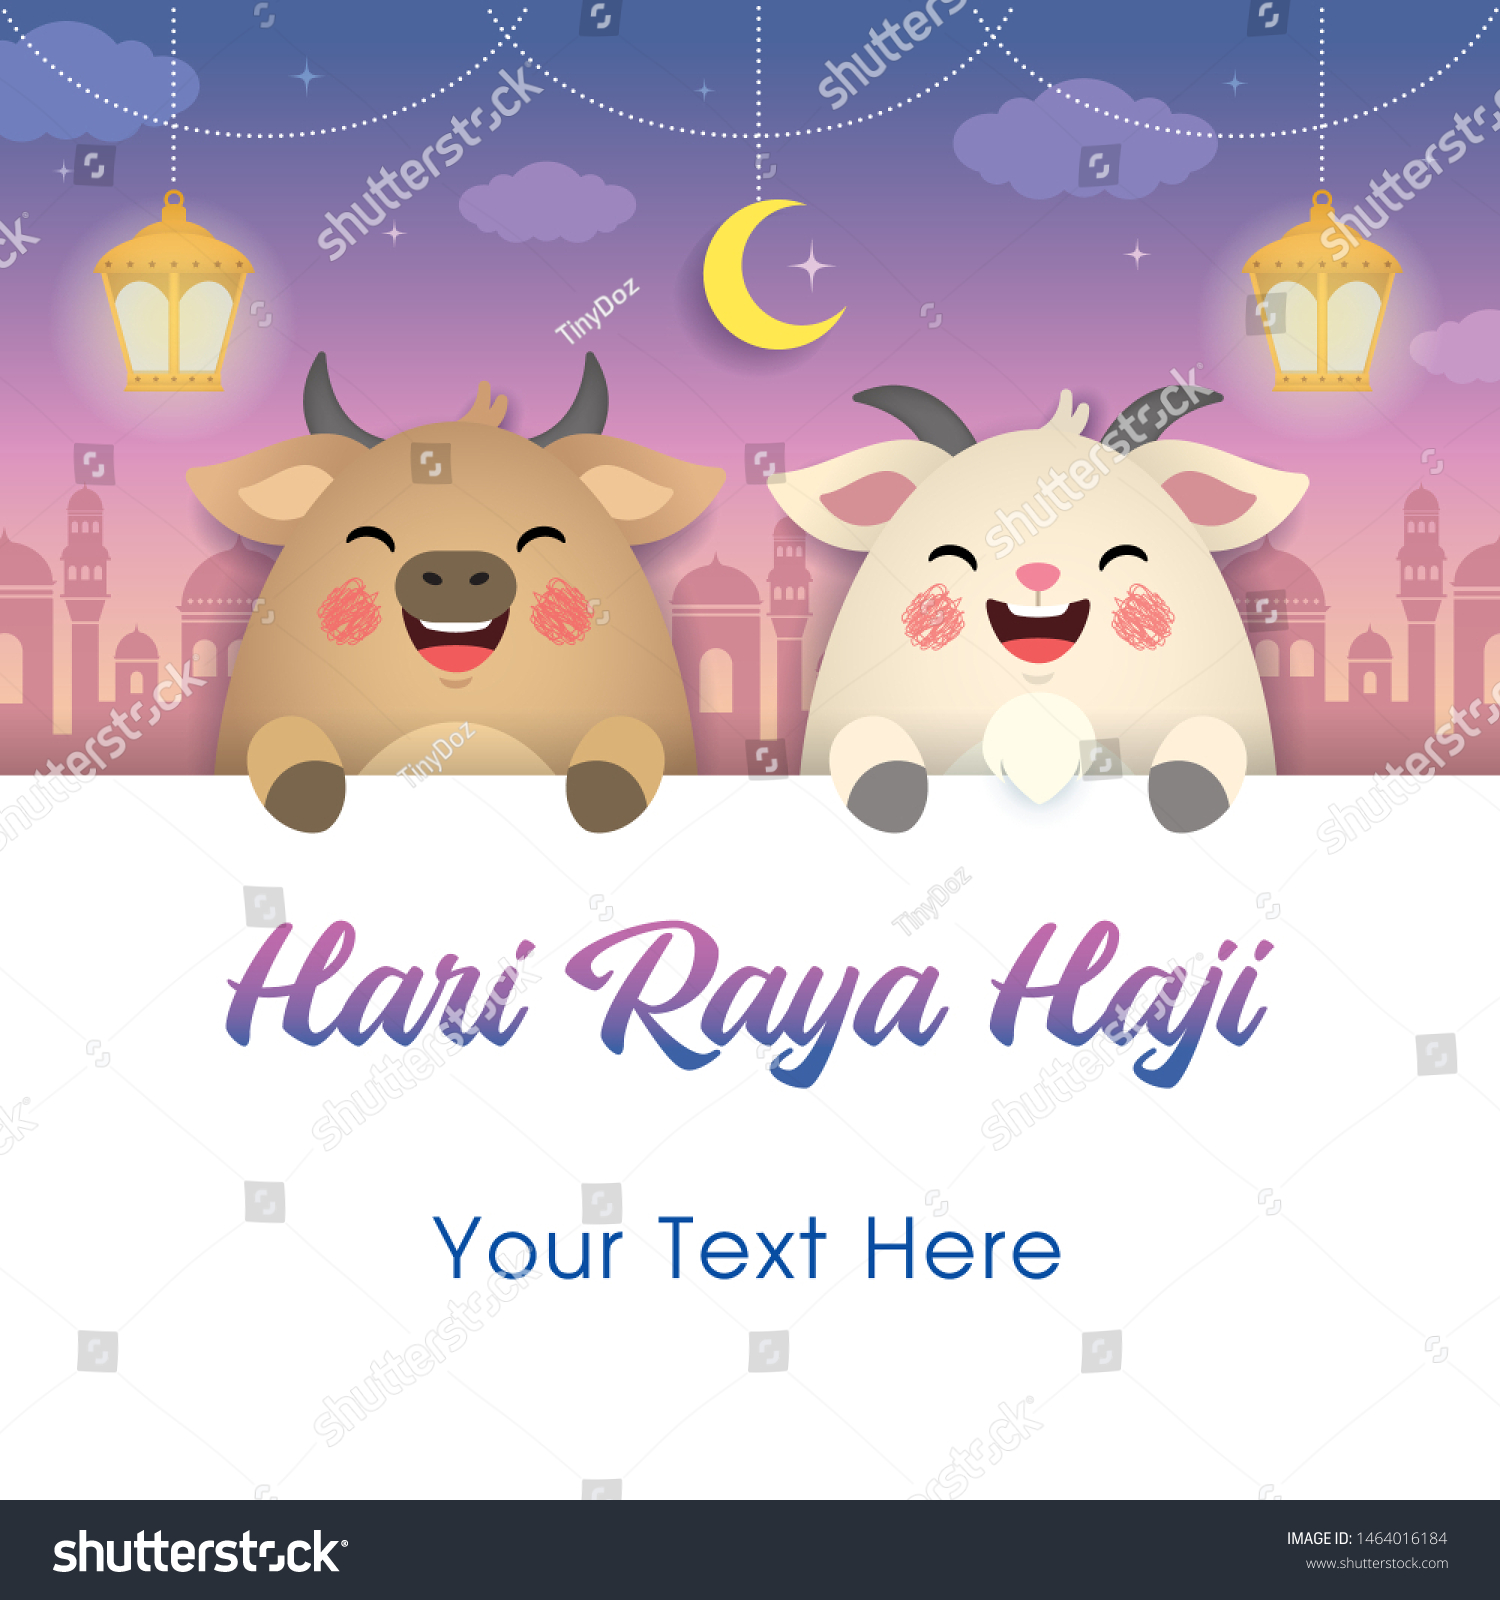 Hari raya haji 2021 wishes